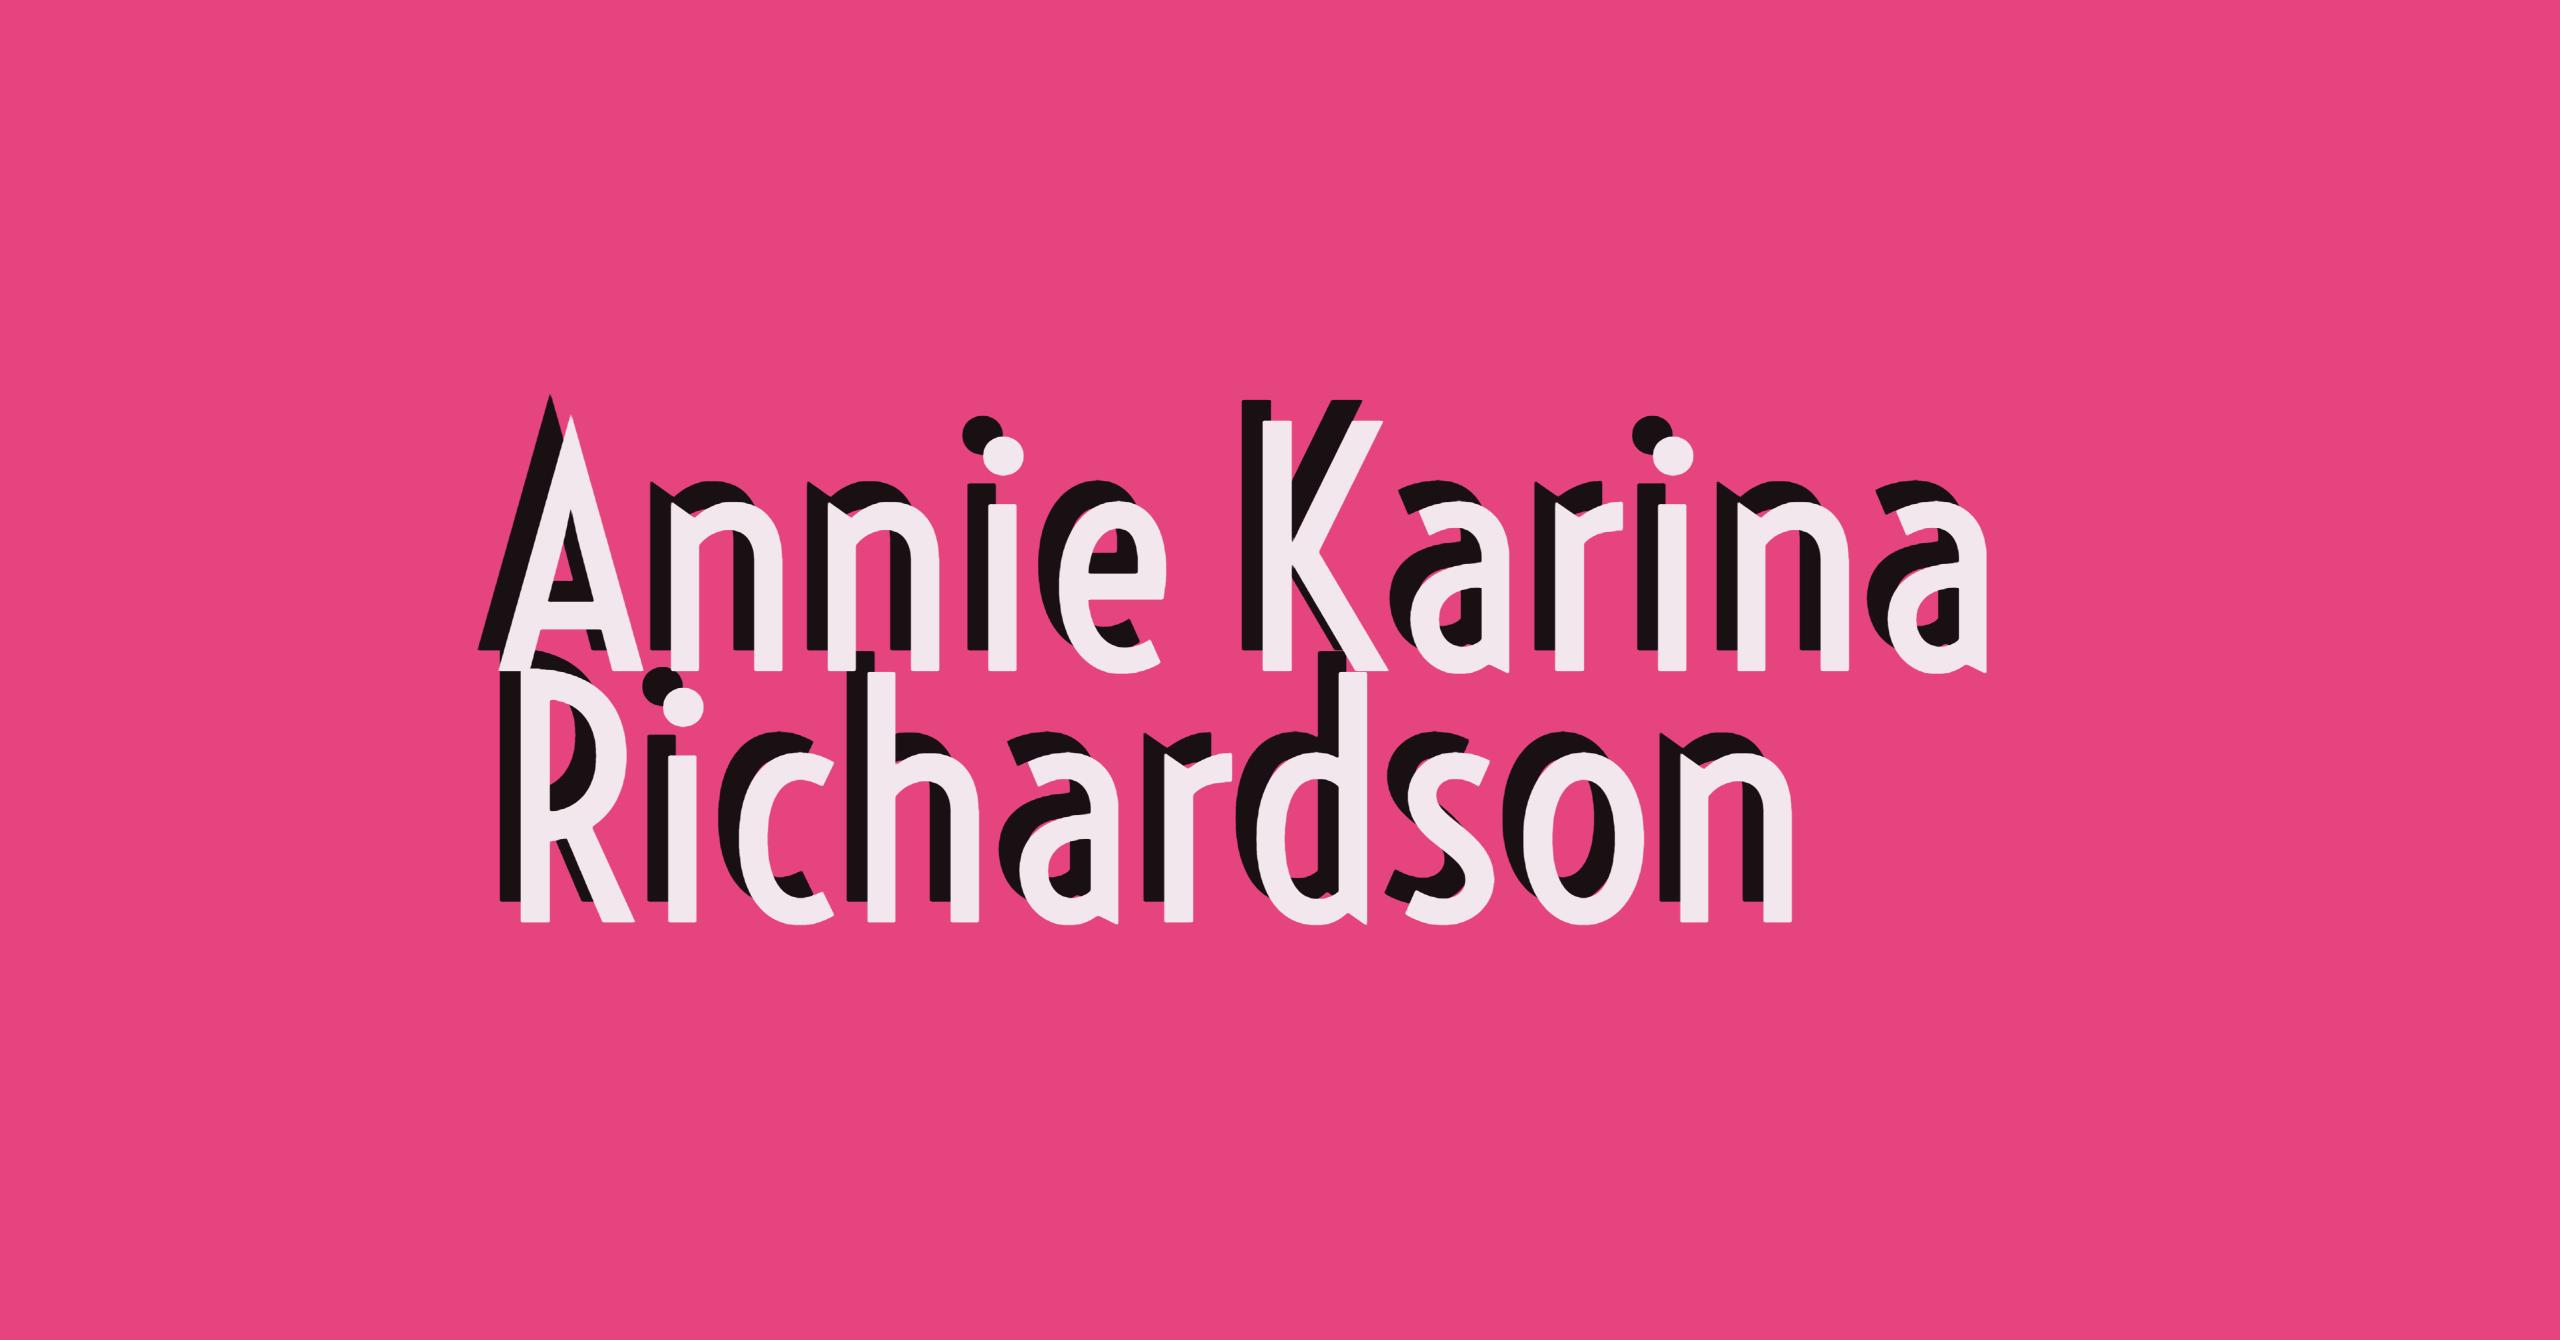 Annie Karina Richardson